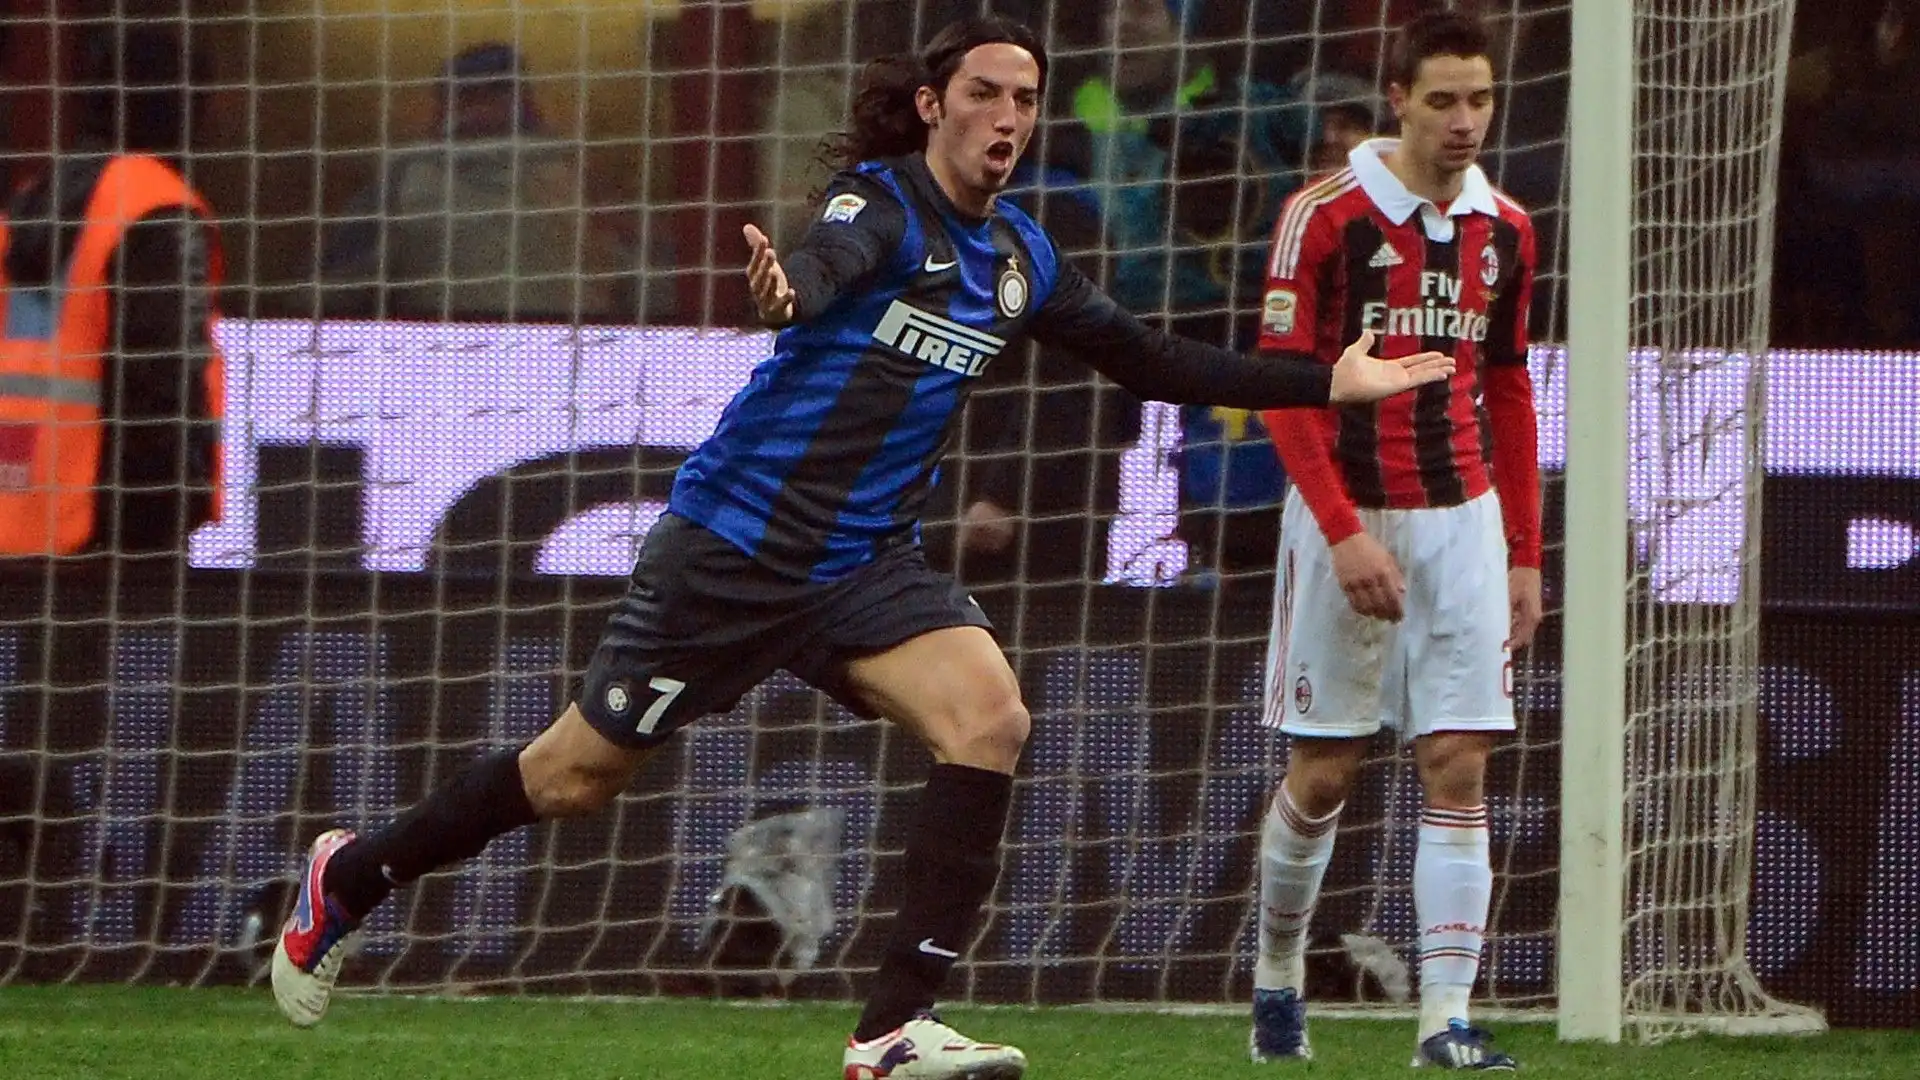 Una rete peraltro non banale, segnata nel derby contro il Milan del 24 febbraio 2013 (1-1 il risultato finale, di El Shaarawy la rete rossonera)